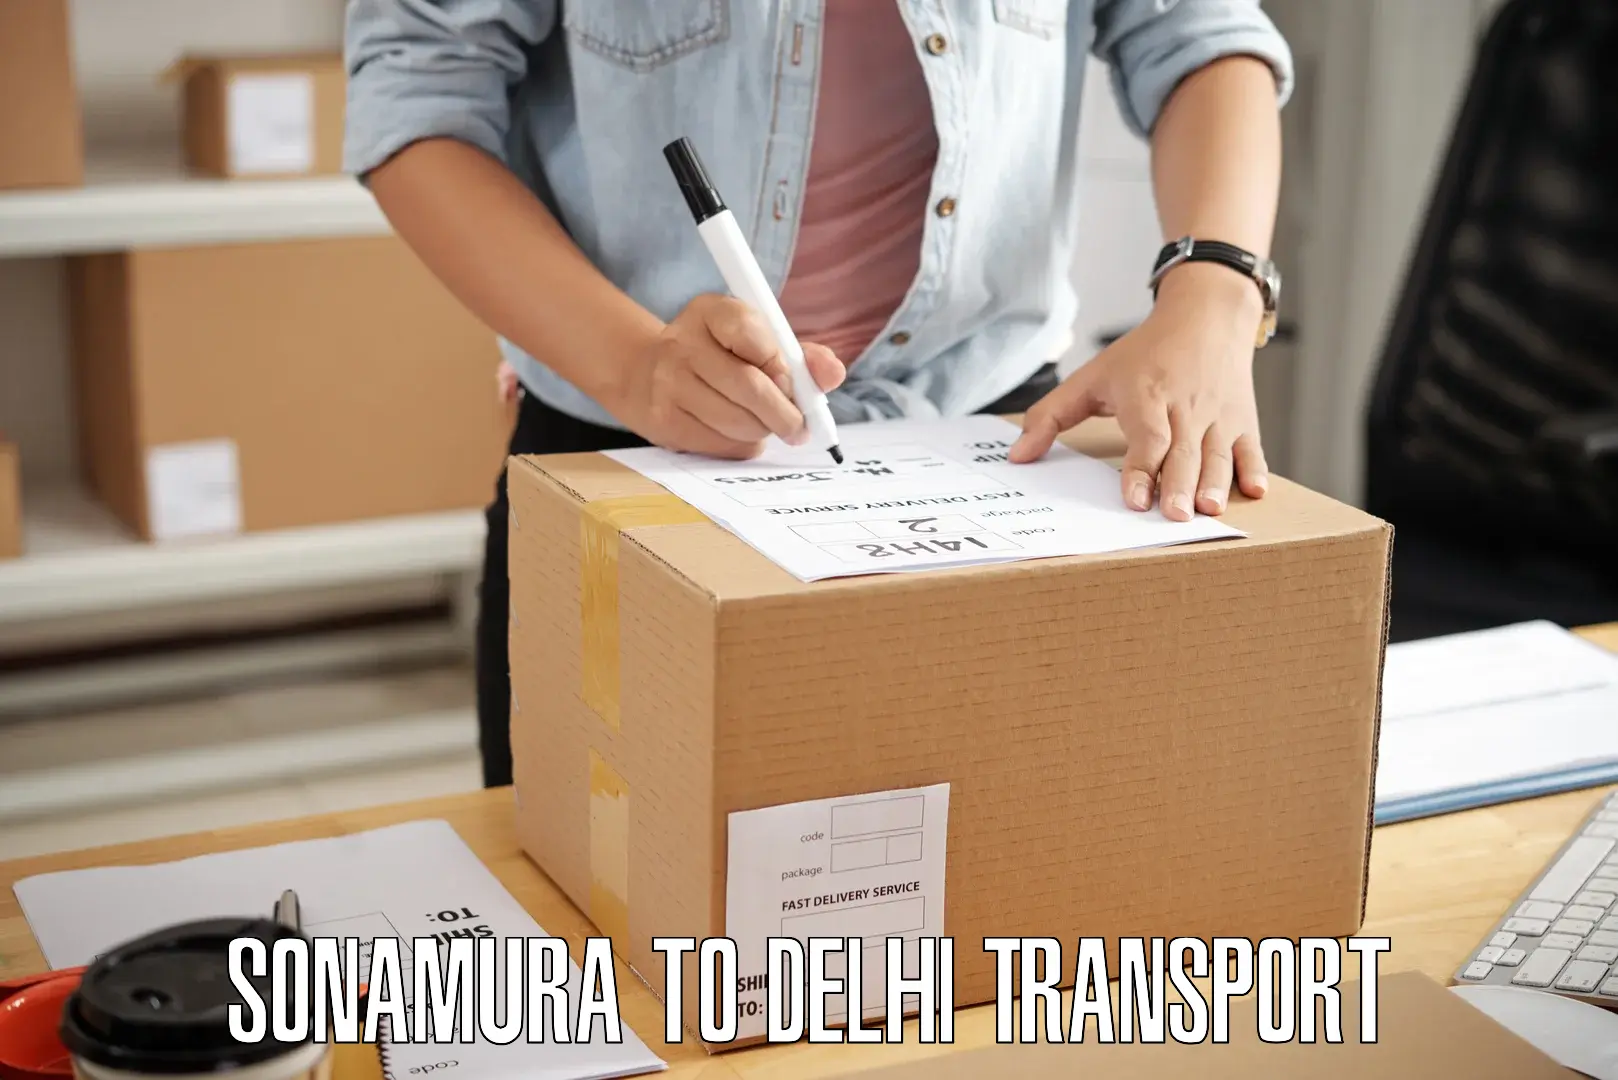 Commercial transport service Sonamura to East Delhi